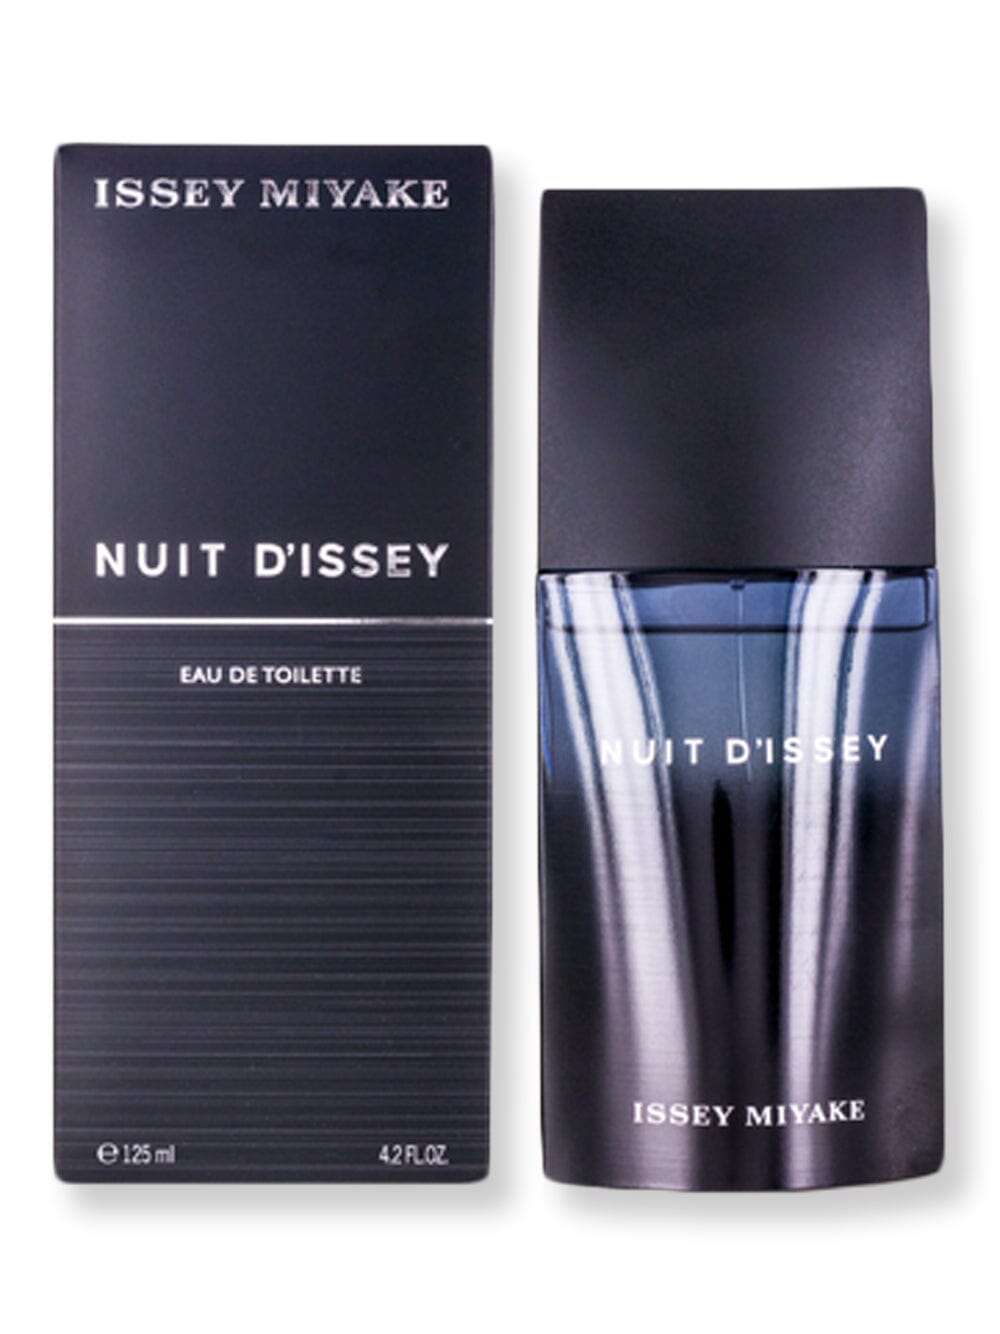 Issey Miyake Issey Miyake Nuit D'issey EDT Spray 4.2 oz125 ml Perfume 